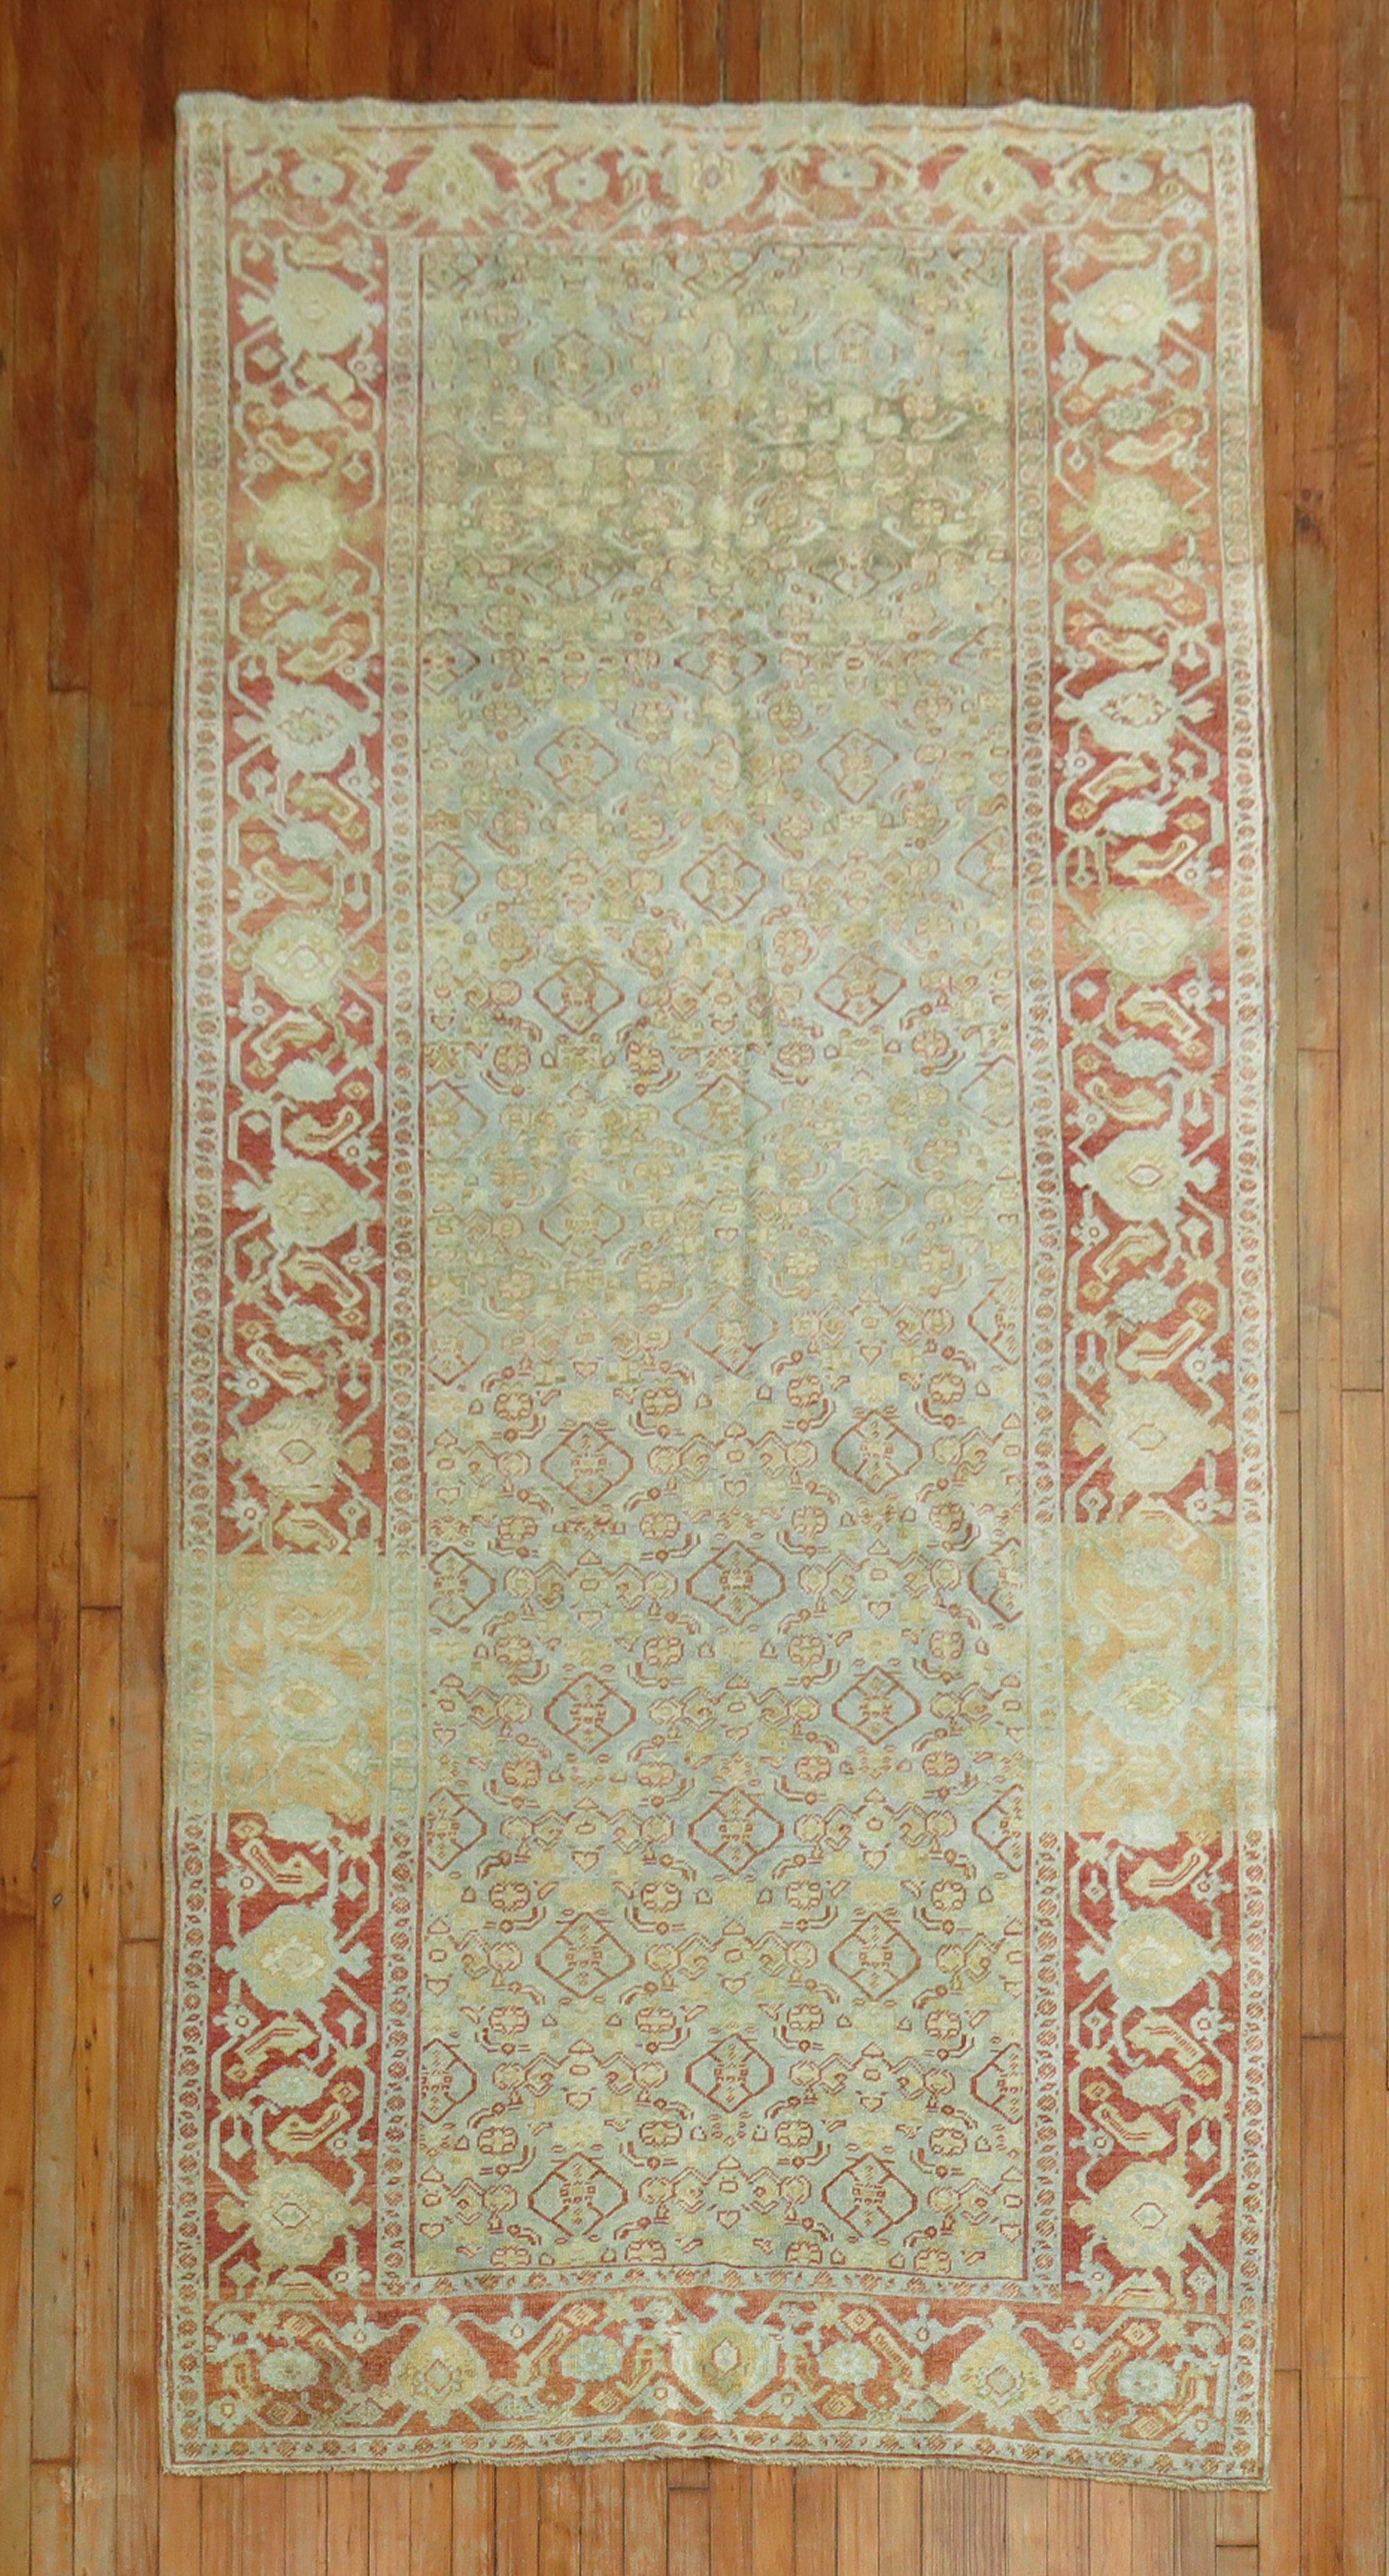 Tapis persan Bidjar du début du XXe siècle dans des tons bleus, gris, verts et rouges

Mesures : 5' x 10'4''.

  